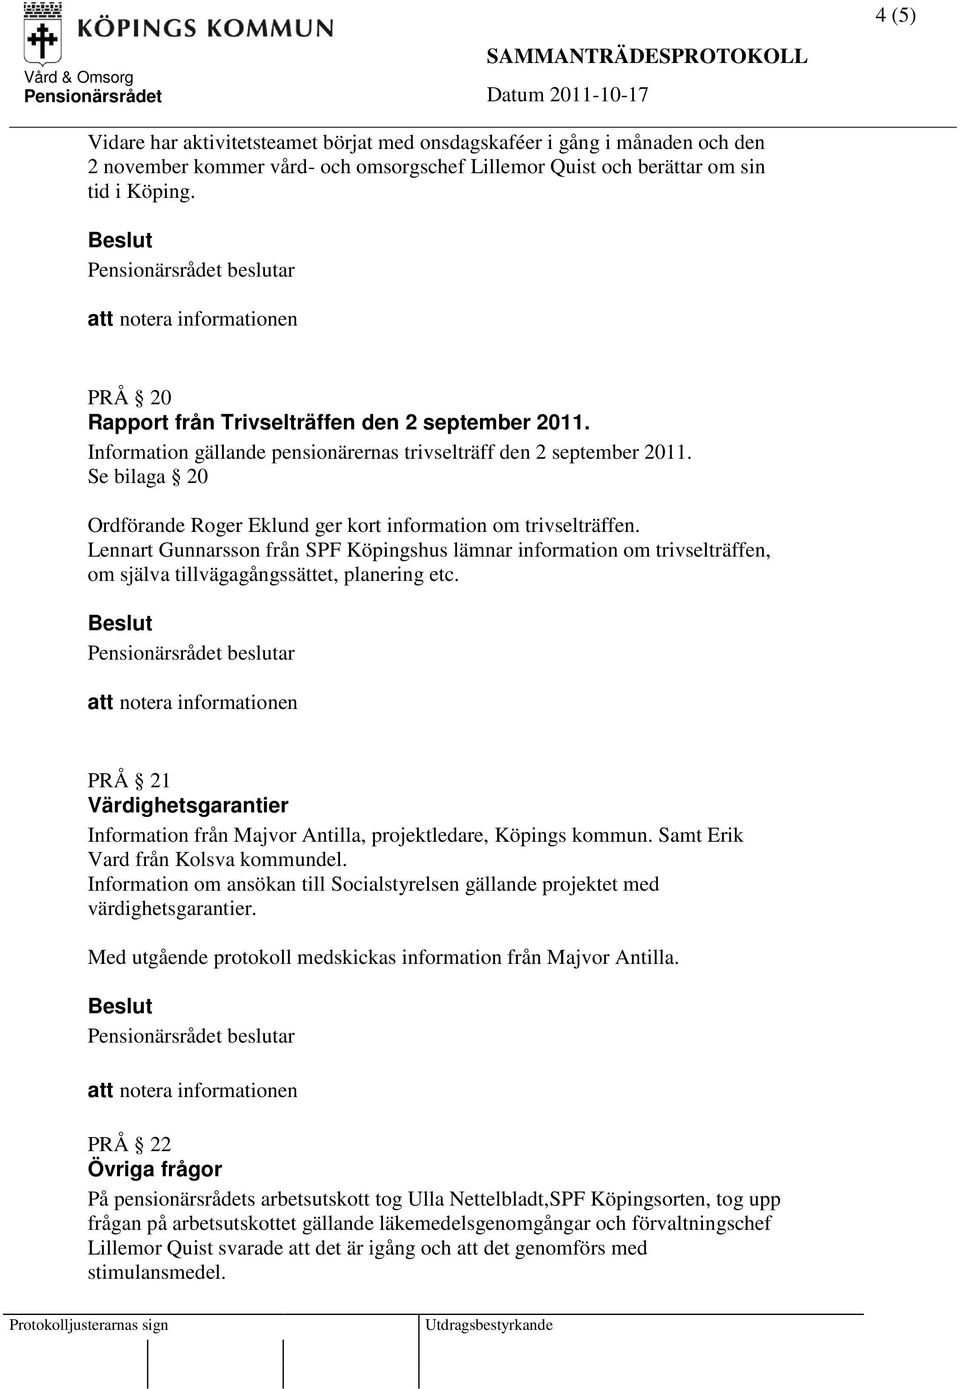 Se bilaga 20 Ordförande Roger Eklund ger kort information om trivselträffen. Lennart Gunnarsson från SPF Köpingshus lämnar information om trivselträffen, om själva tillvägagångssättet, planering etc.